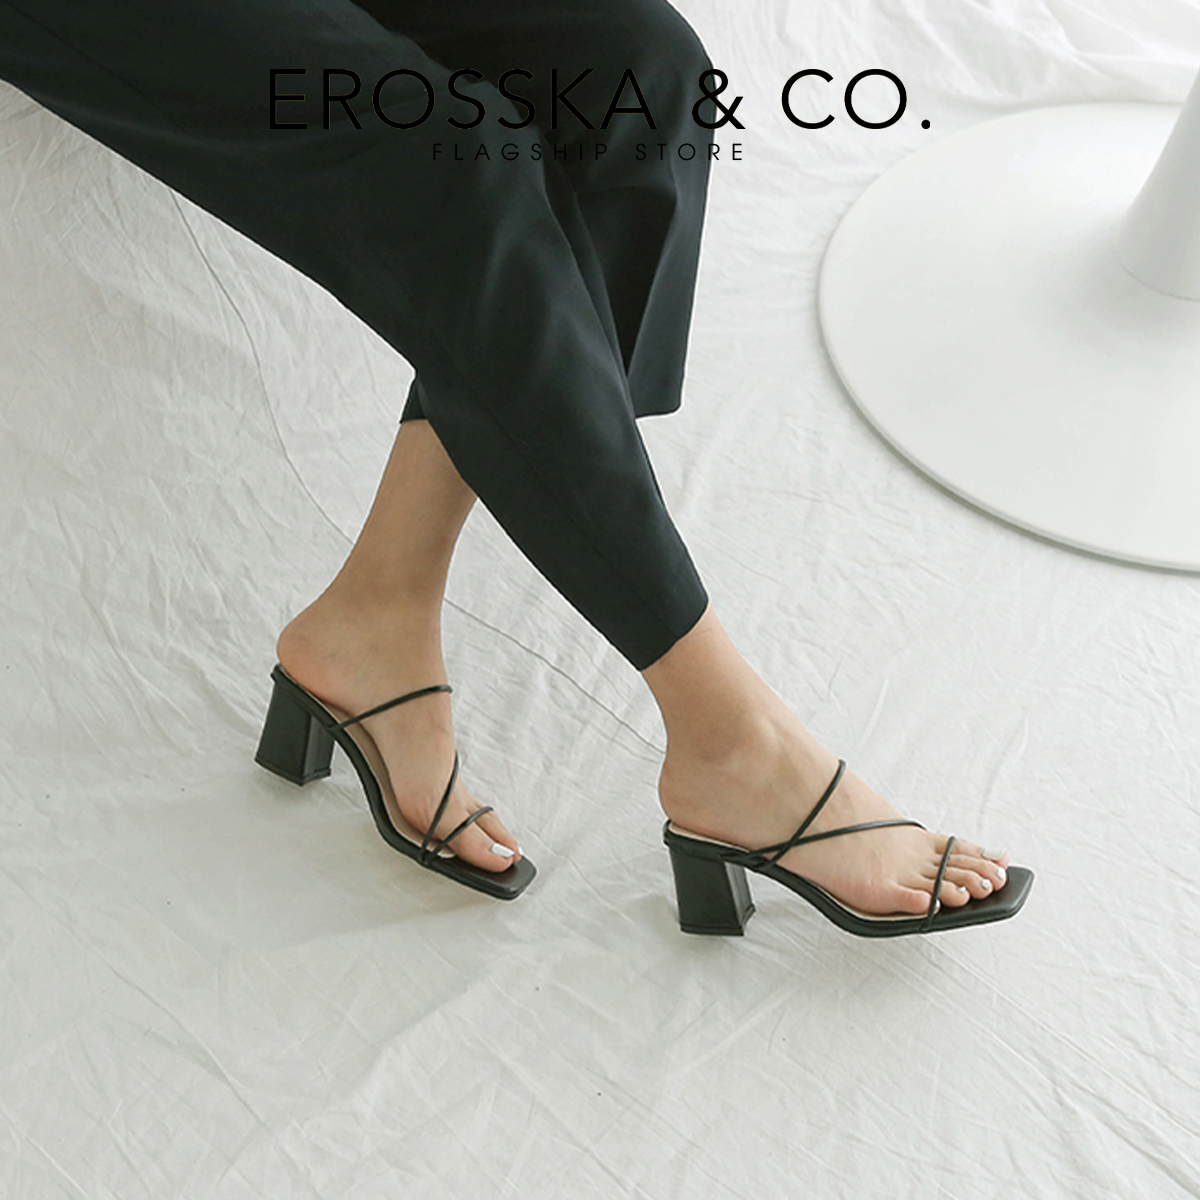 Dép cao gót Erosska mũi vuông phối dây kiểu dáng Hàn Quốc cao 7cm màu nude - EM074